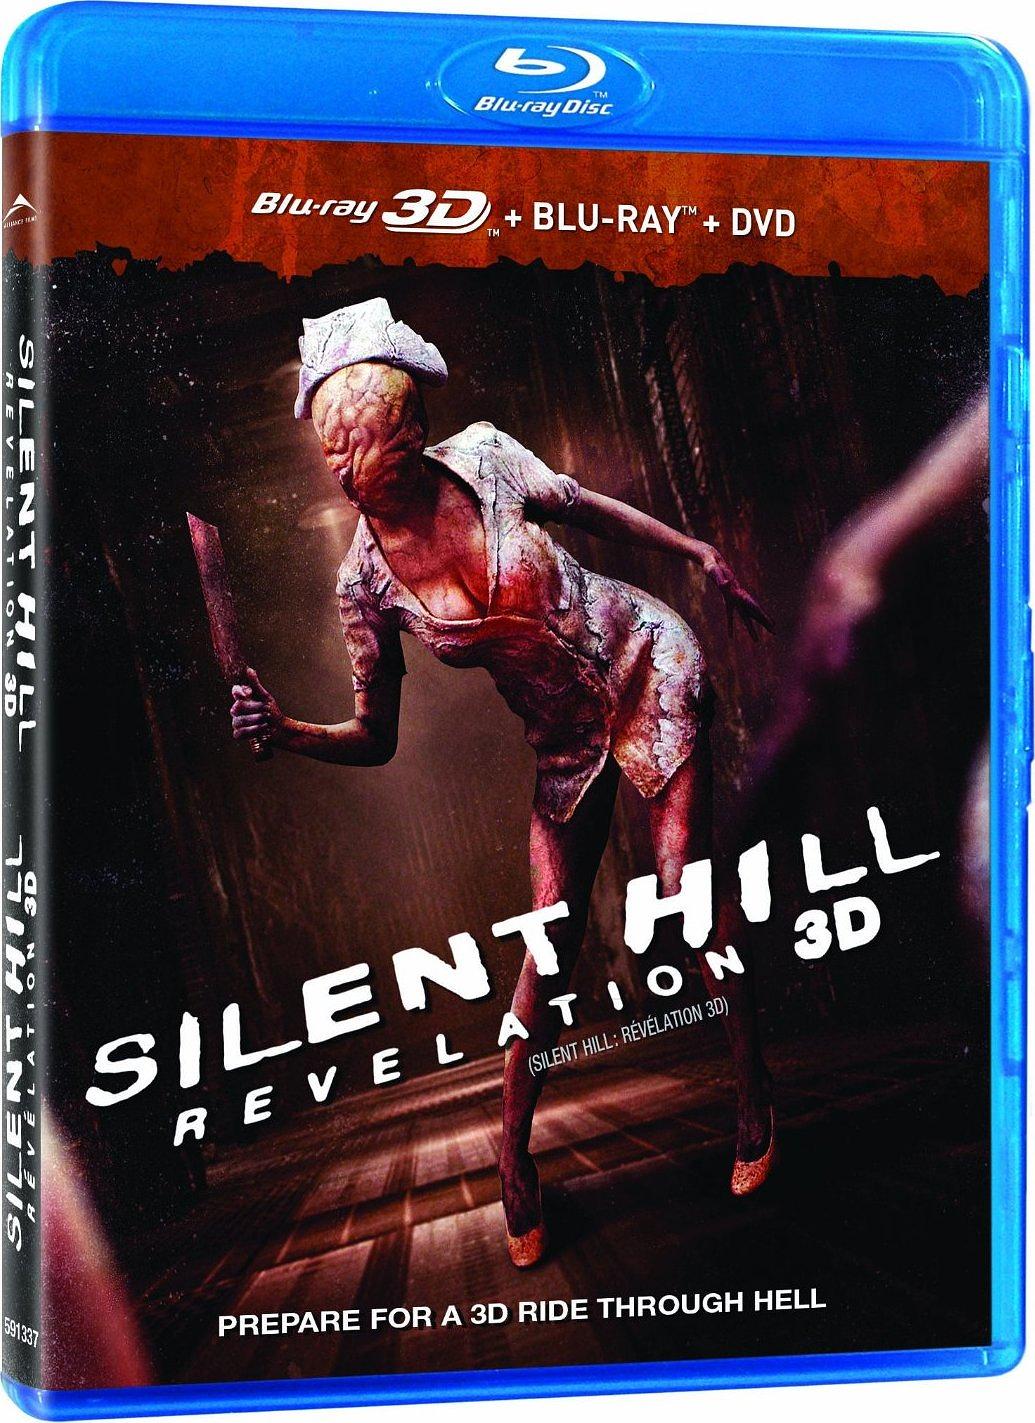 [寂静岭2].Silent.Hill.Revelation.2012.3D.BluRay.1080p.AVC.DTS-HD.MA.7.1-Pete@HDSky     41.5G-2.jpg